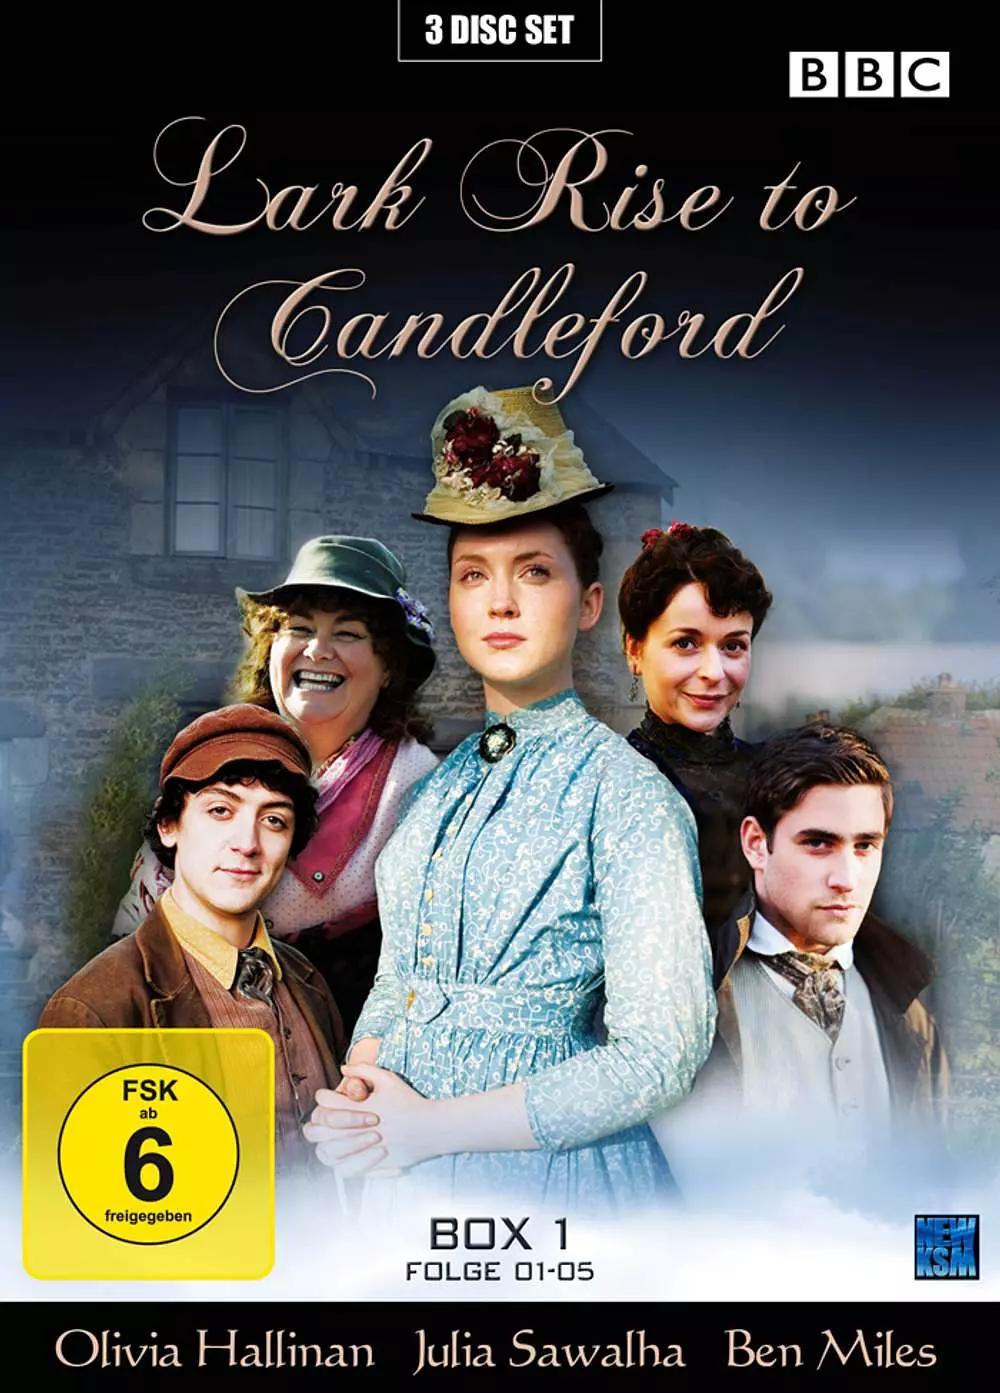 《雀起乡到烛镇》(英文名:lark rise to candleford)是一部英国电视剧